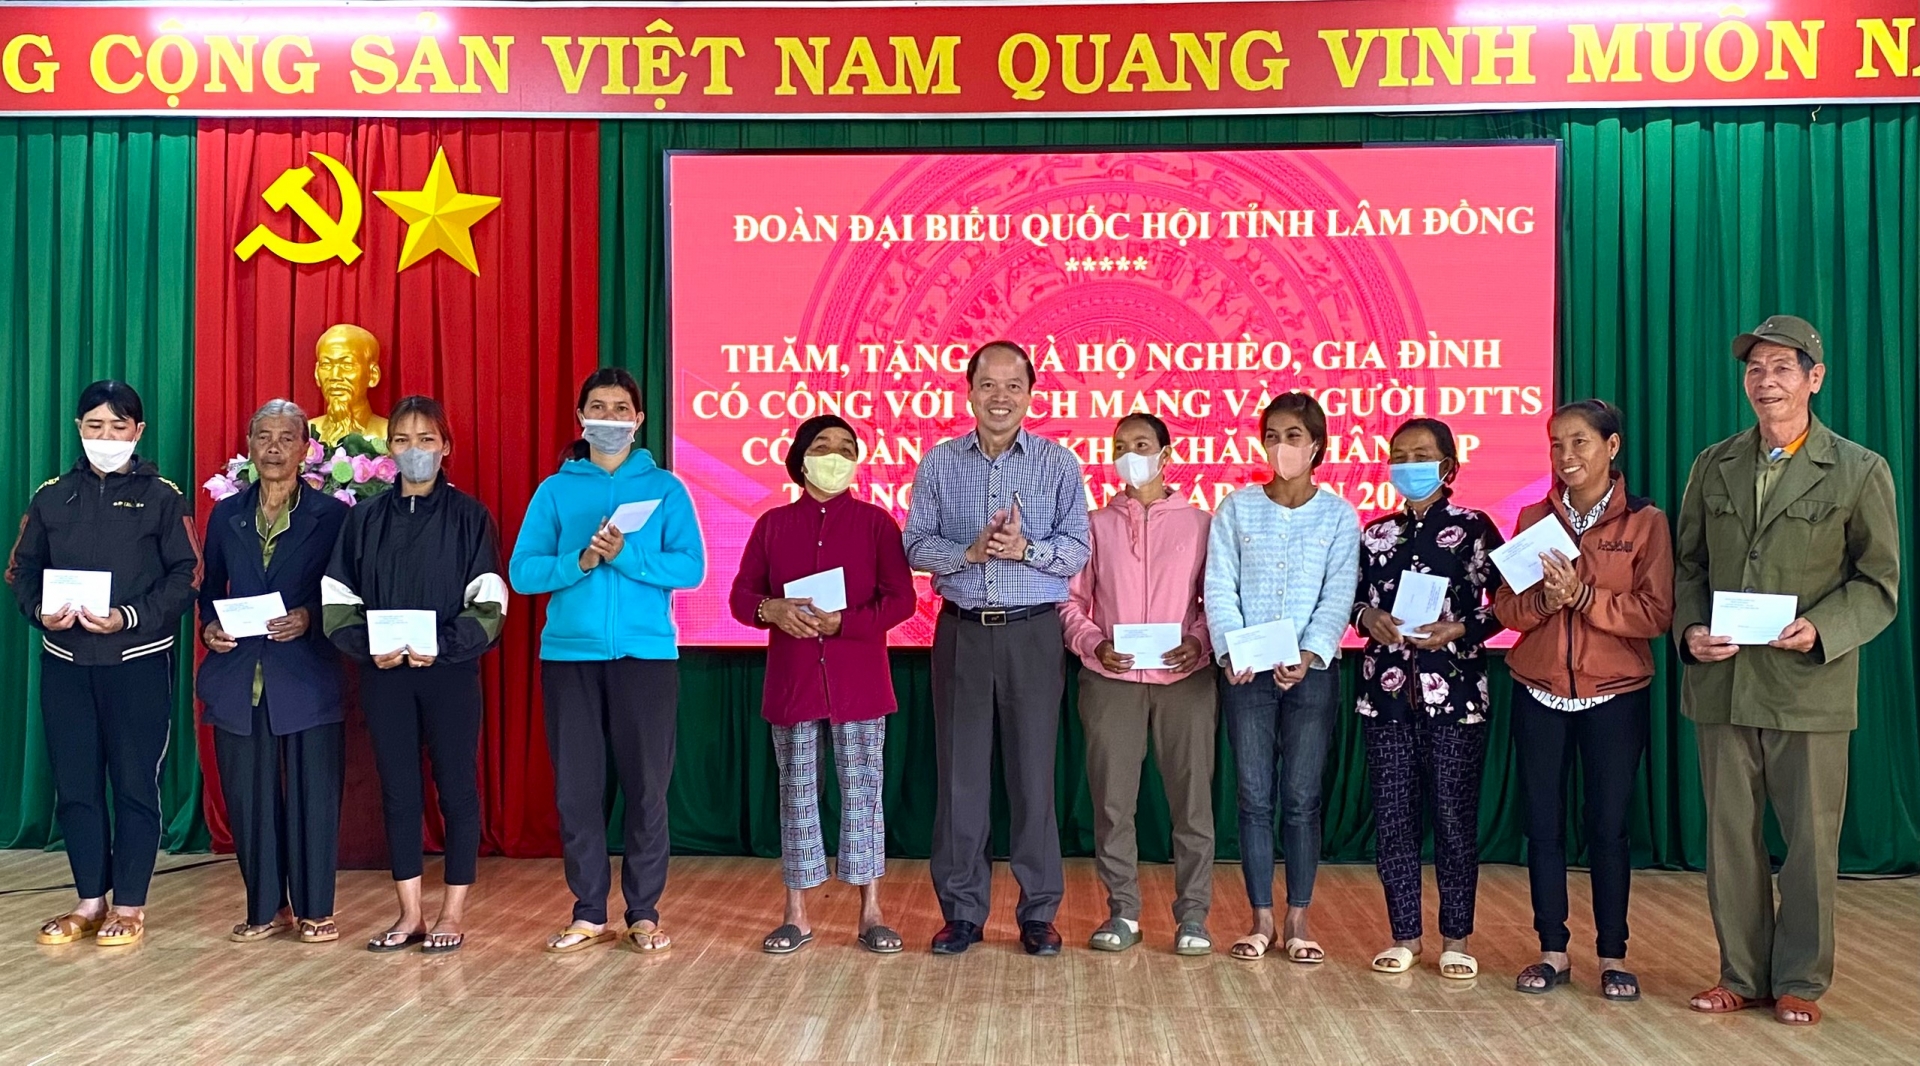 Đồng chí Nguyễn Viết Vân - Bí thư Huyện ủy Bảo Lâm trao tặng quà Tết cho các hộ nghèo, hộ đồng bào dân tộc thiểu số